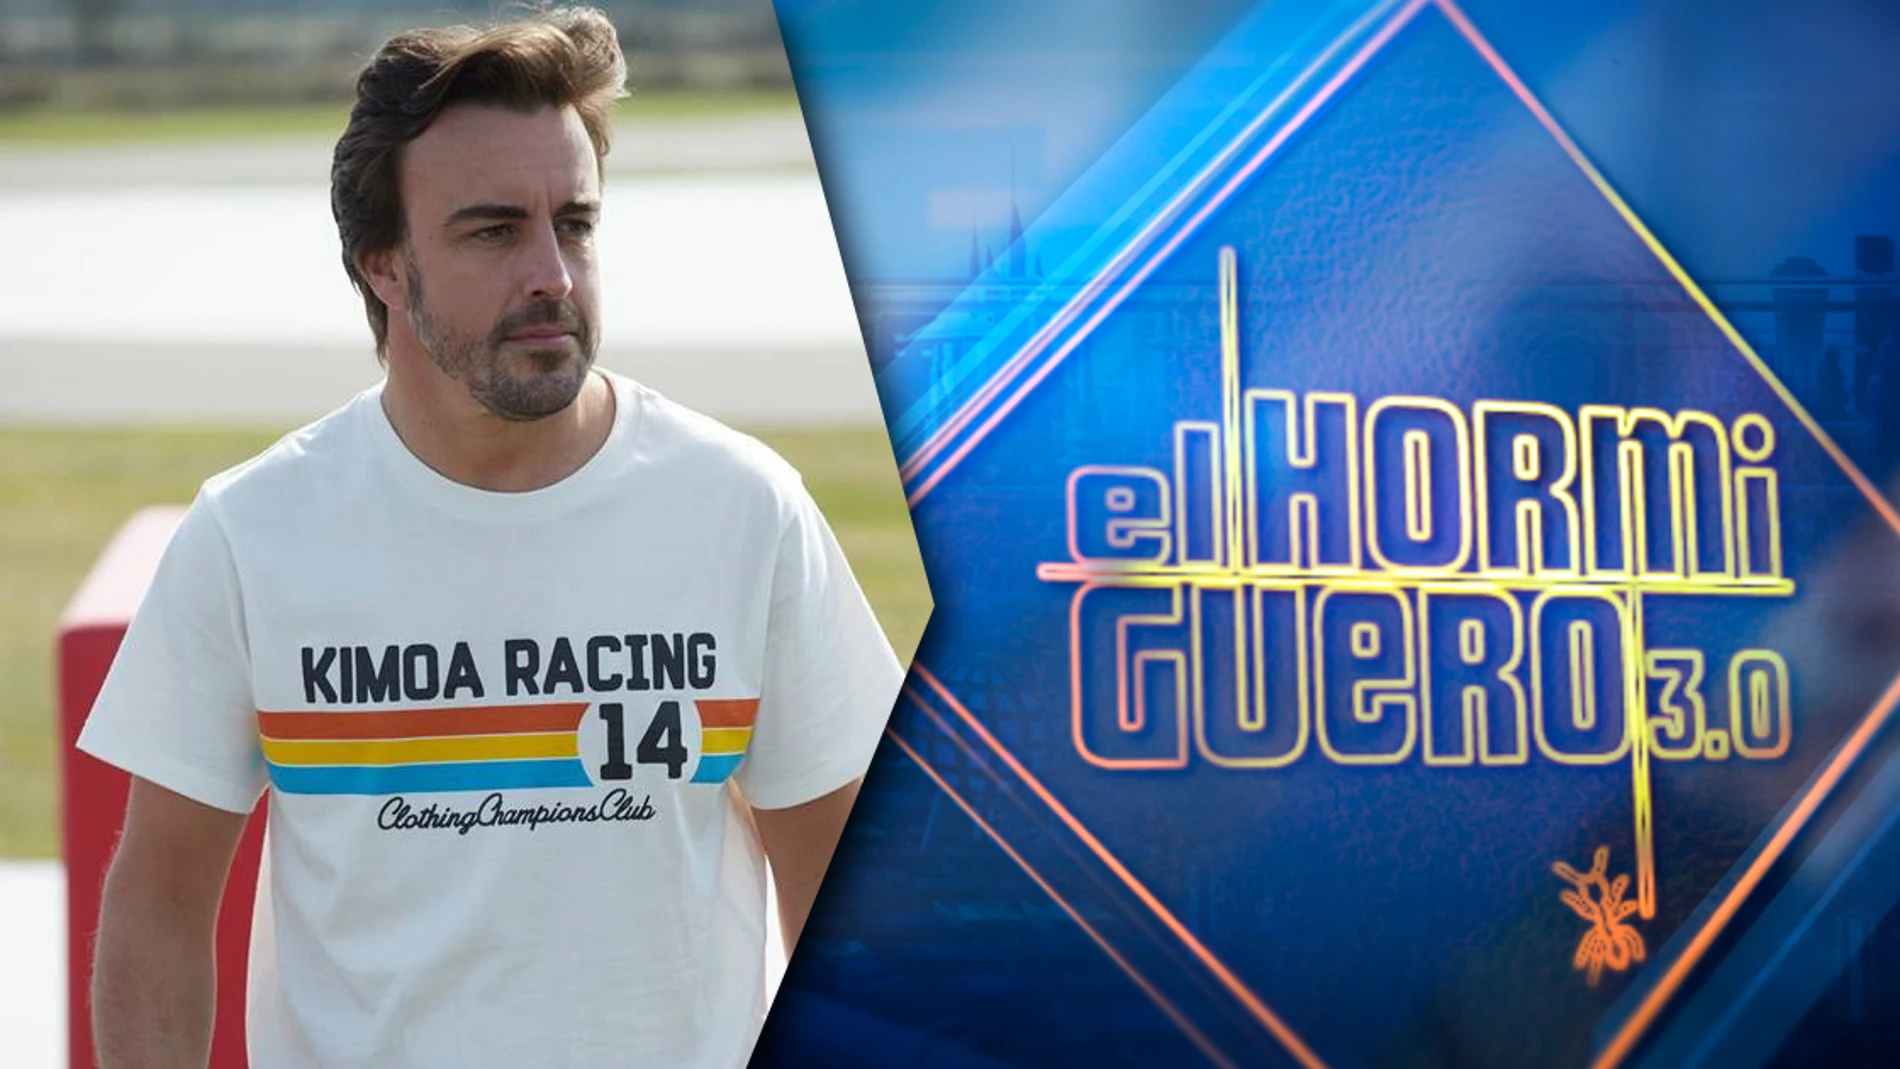 El lunes arrancamos la semana en 'El Hormiguero 3.0' con uno de los mejores deportista españoles, el piloto Fernando Alonso